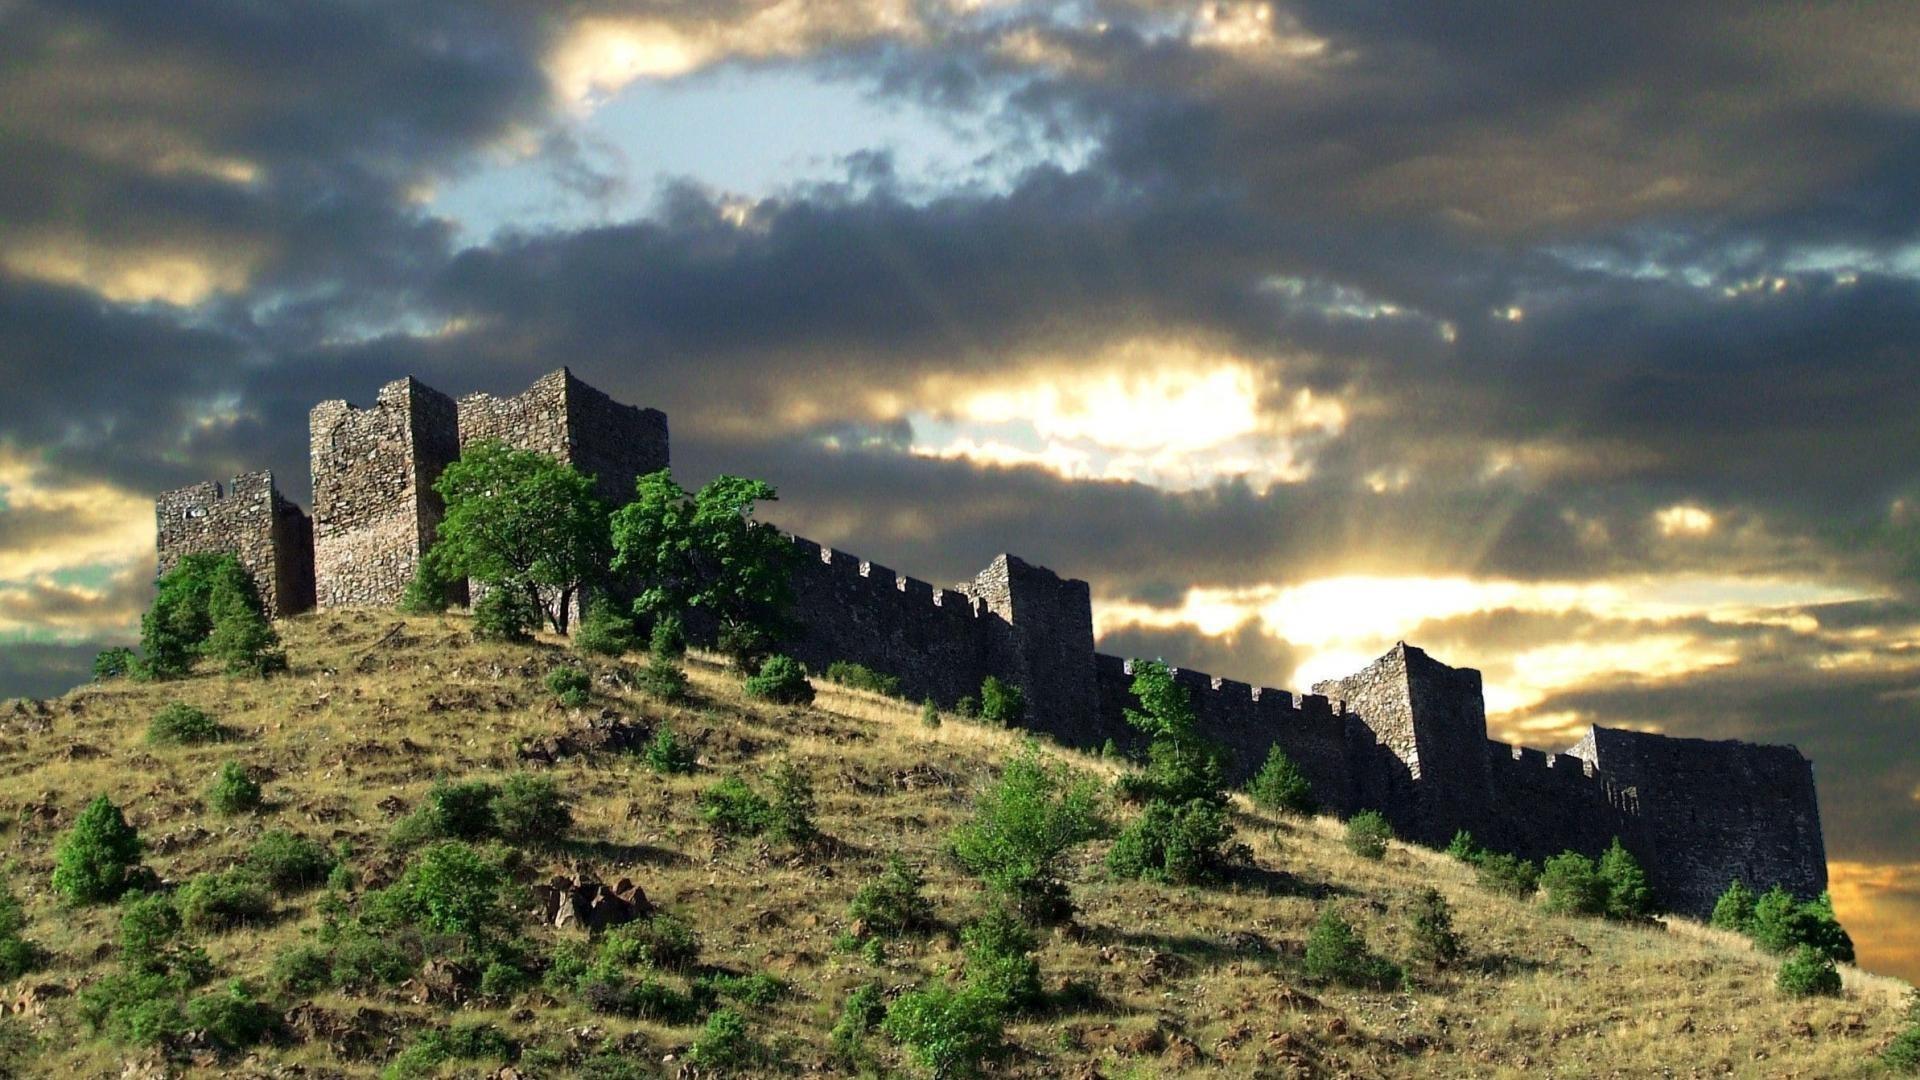 Castle on hill in kralijevo serbia wallpaper